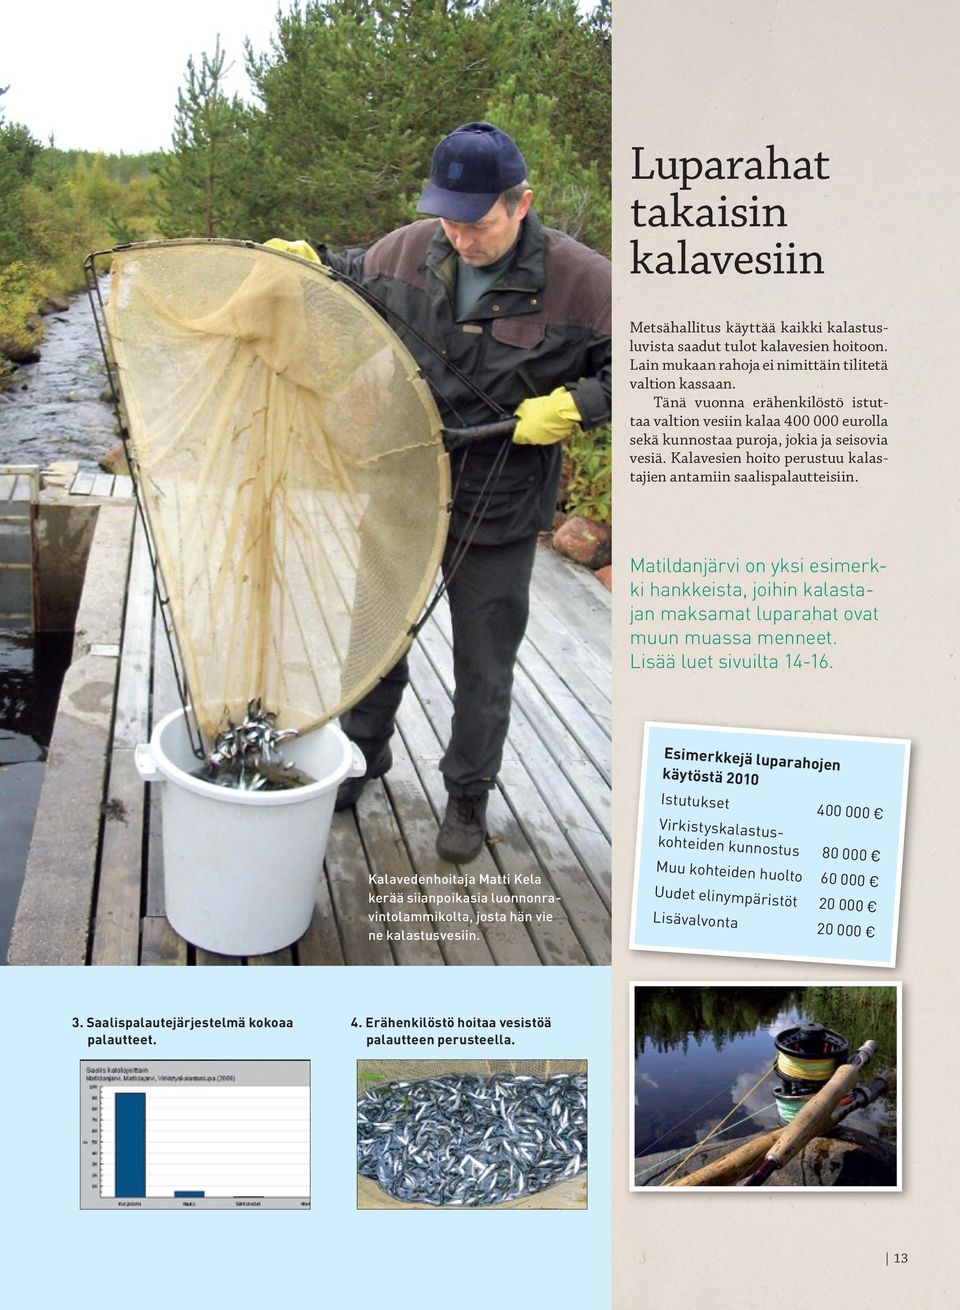 Matildanjärvi on yksi esimerkki hankkeista, joihin kalastajan maksamat luparahat ovat muun muassa menneet. Lisää luet sivuilta 14-16.